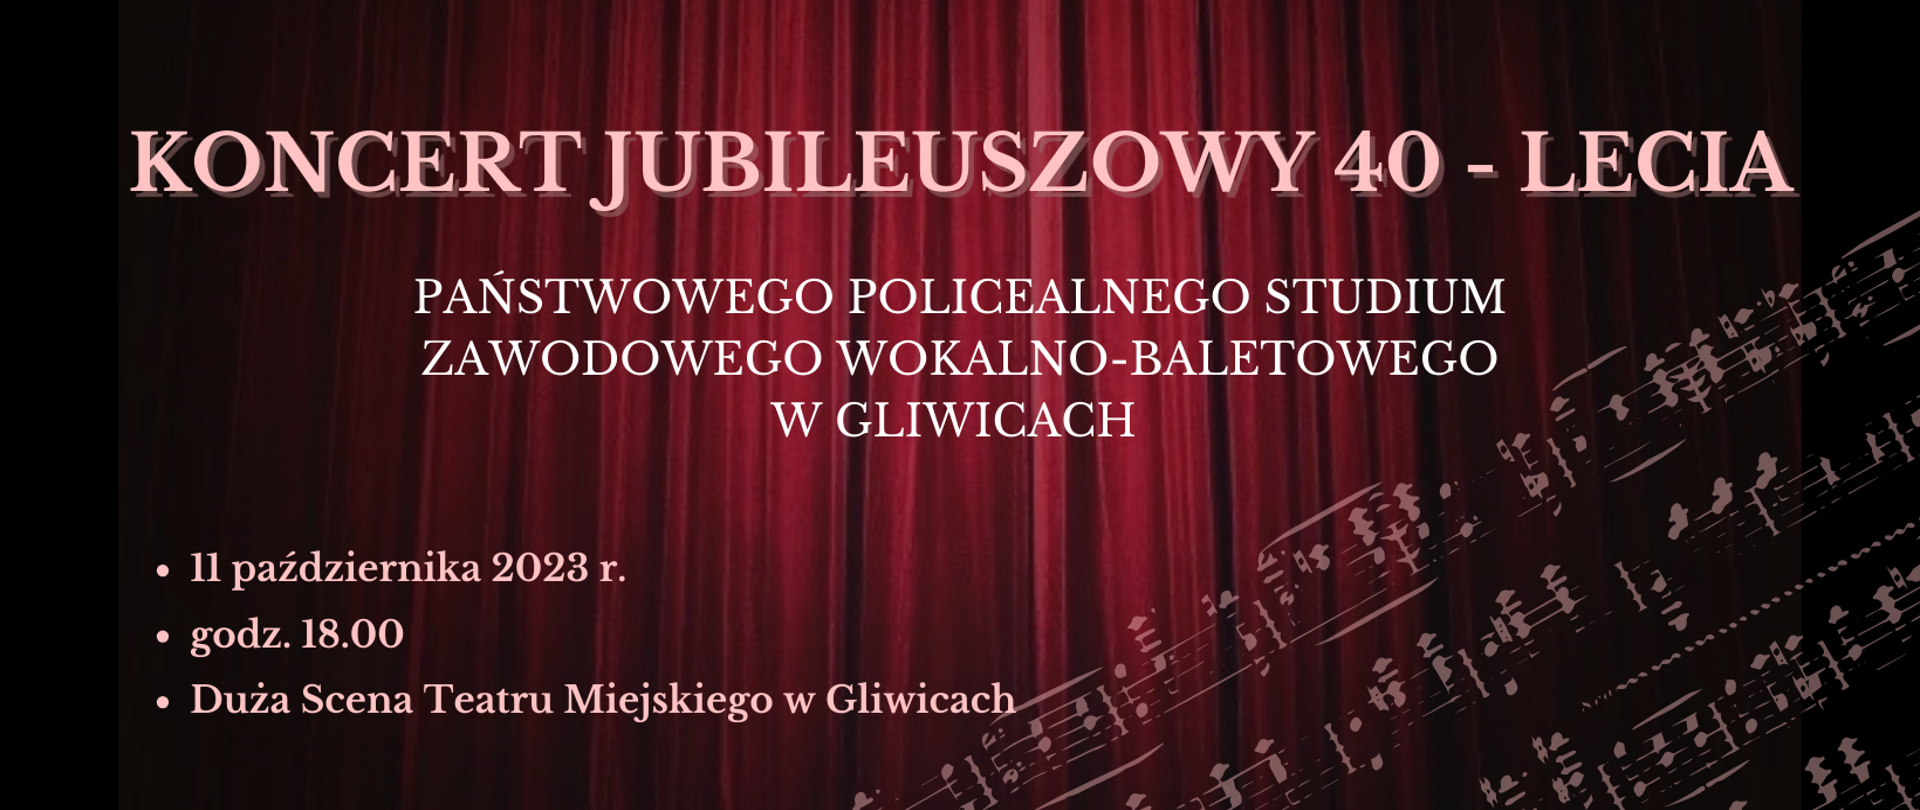 Koncert jubileuszowy 40-lecia 11.10.2023 godz. 18, duża scena Teatru Miejskiego w Gliwicach (informacje na czarno-bordowym tle)